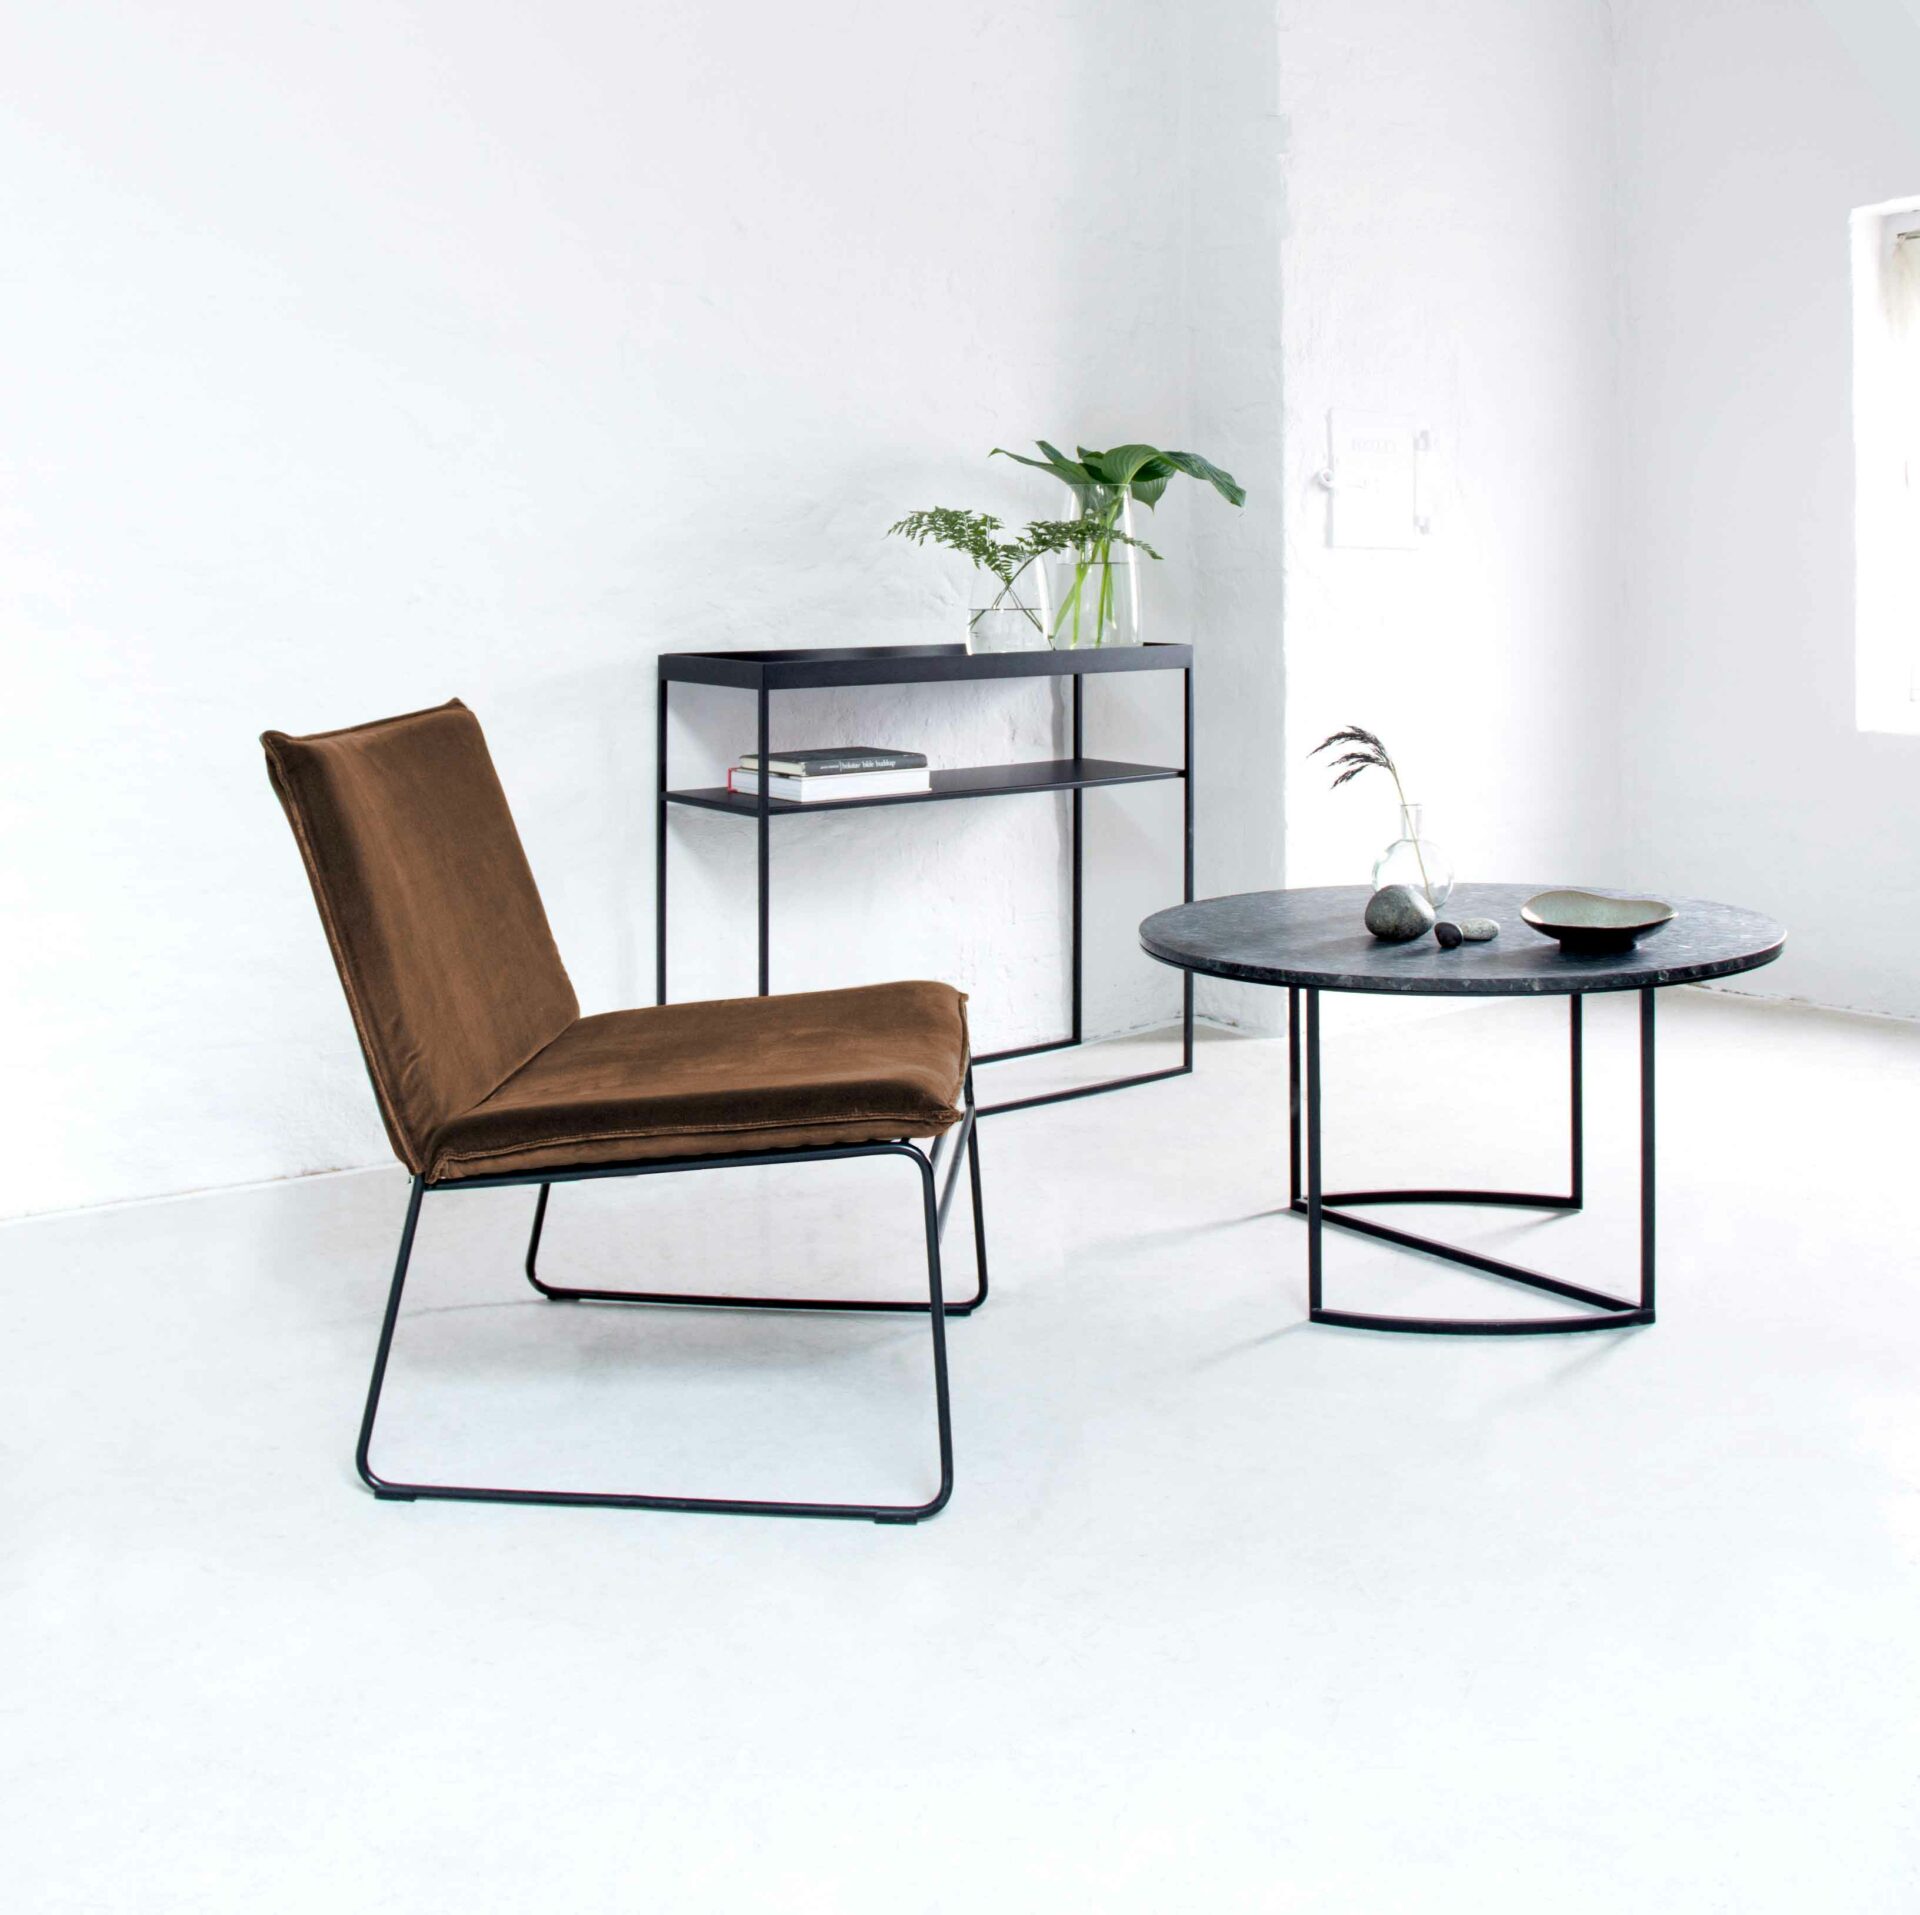 Freudenreich Interior Design | Loungesessel KYST in braun